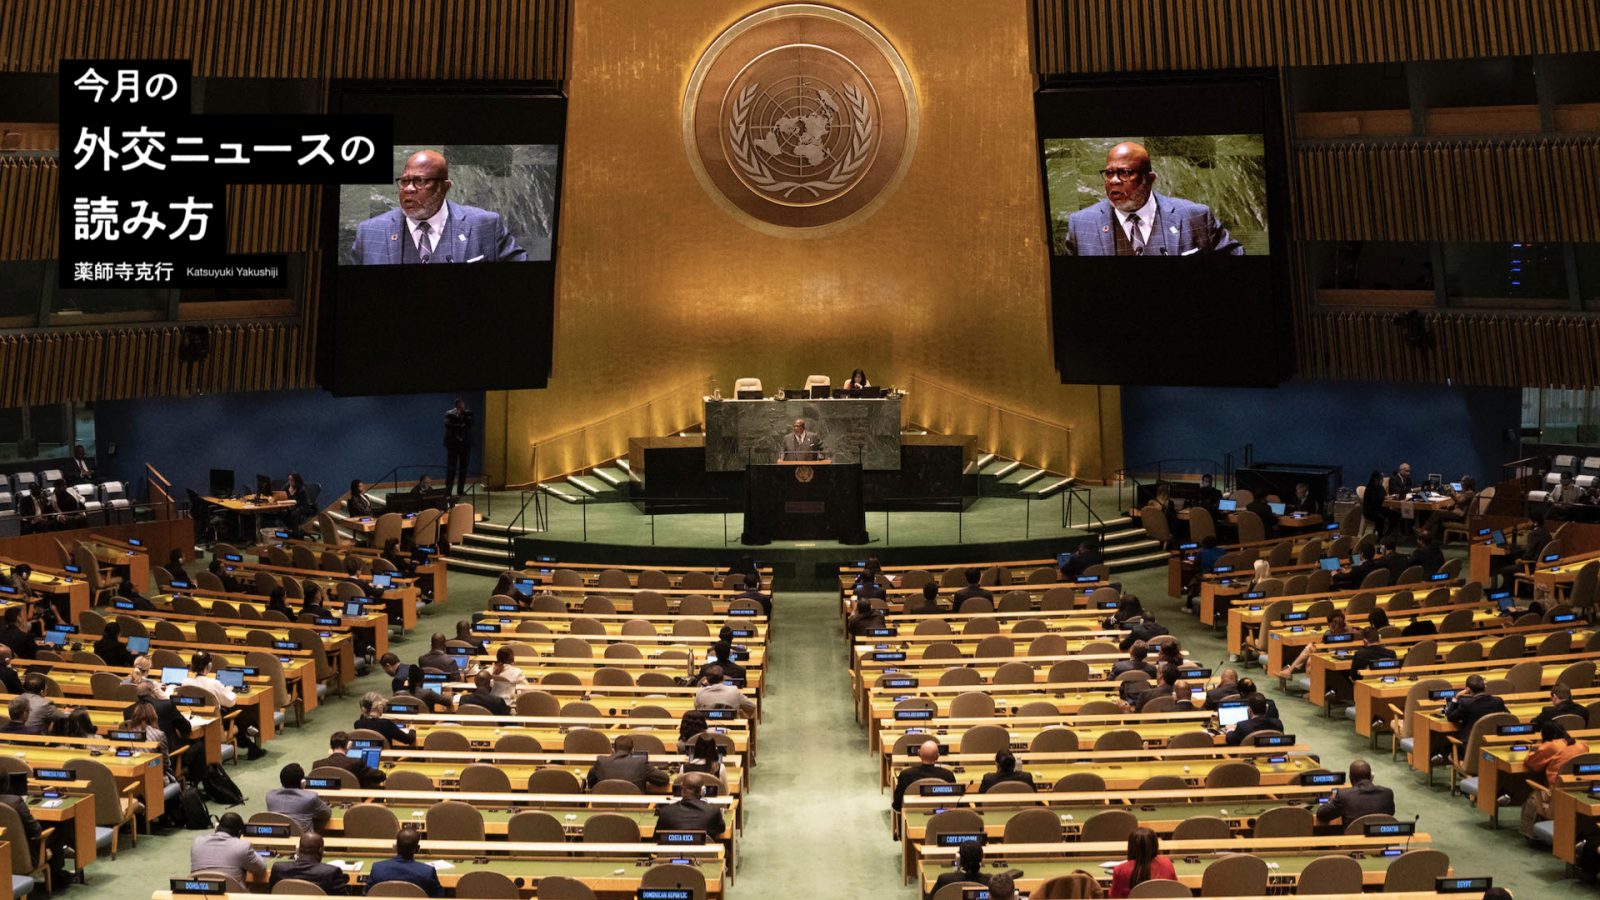 国連総会の「大きな異変」に見る国際協調の未来 | 薬師寺克行「今月の外交ニュースの読み方」